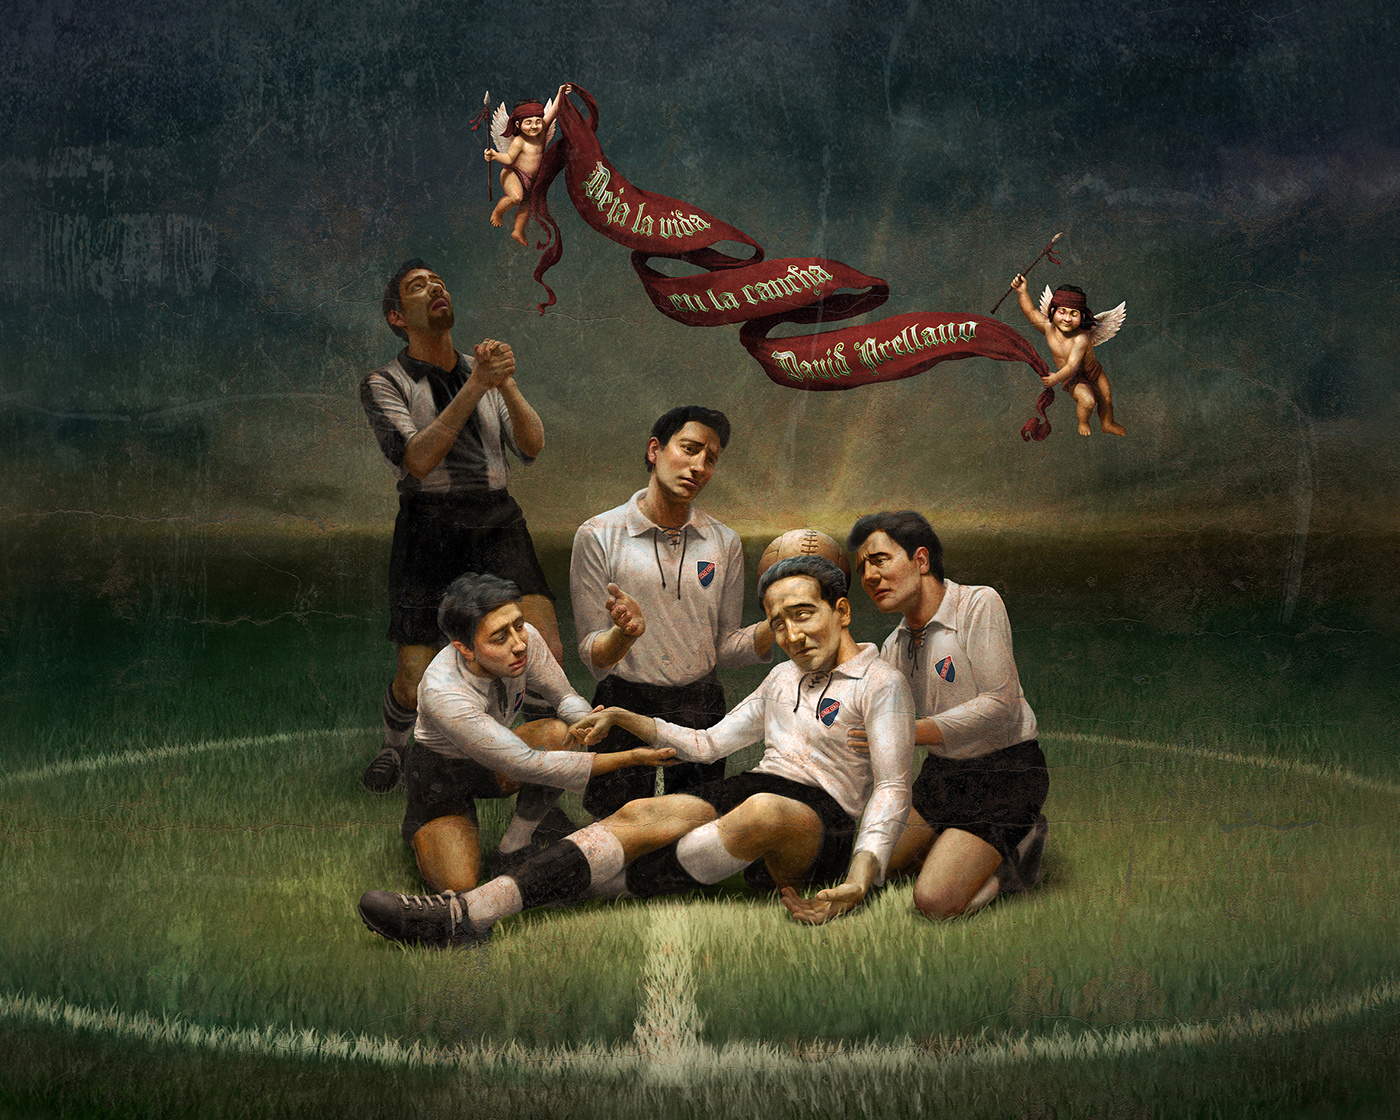 colo colo campeones de estampa kinderlab Futbol futbol chile ilustracion artistas Exposición libro fútbol documental colo-colo